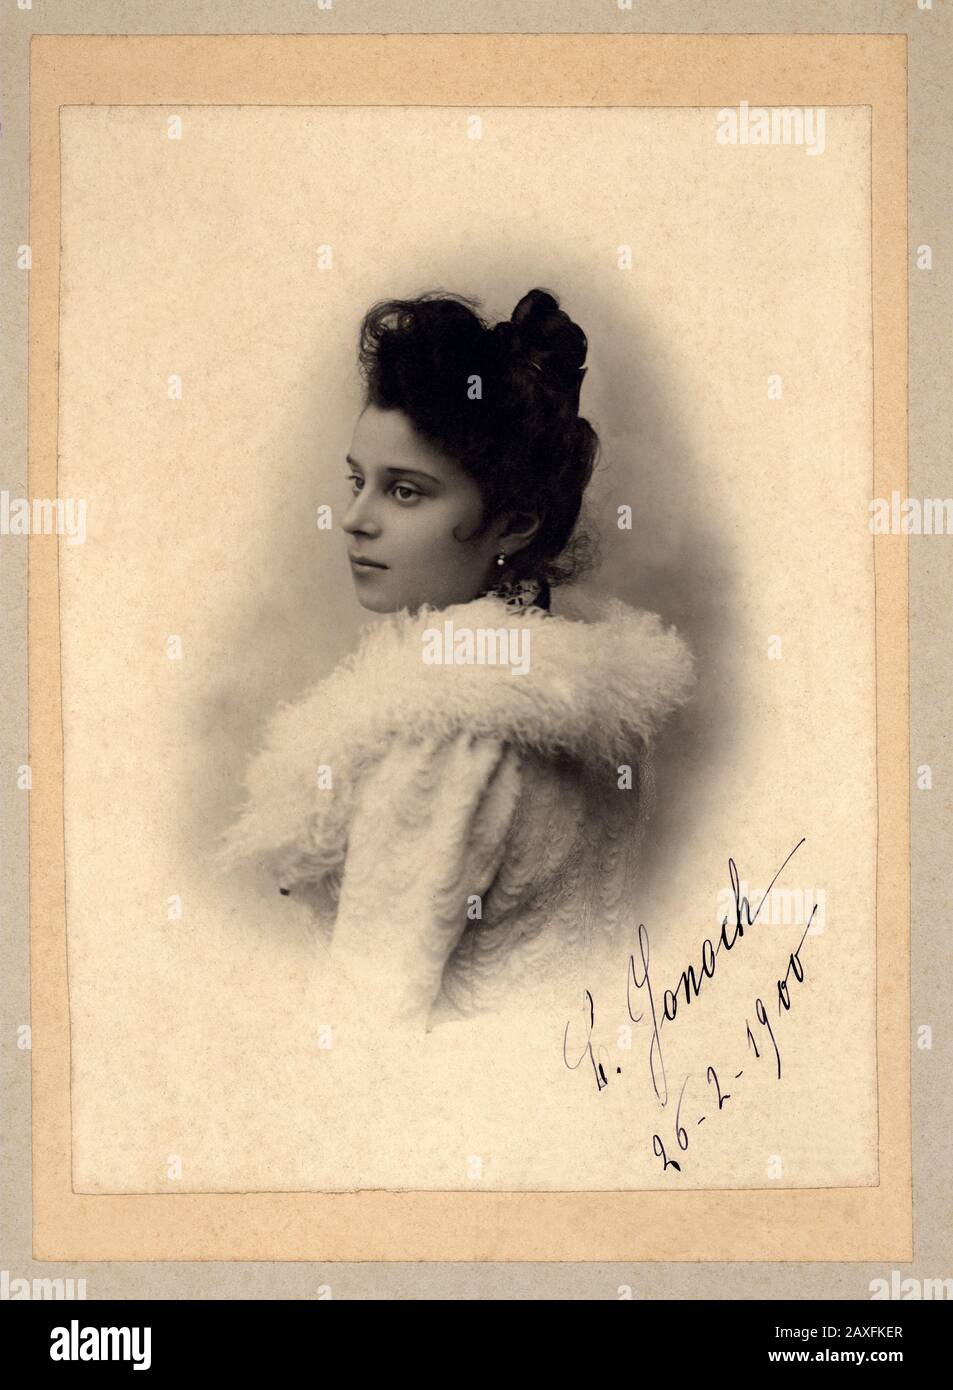 1900 , 26 février , Vicence , ITALIE : La noblesse italienne C. JONOCH , photo d' A. Bordigioni , Bassano del Grappa ( Vicence ) - BELLE EPOQUE - ITALIA - NOBLESSE - NOBILI - NOBILTA' ITALIANA - FOTO STORICHE - PHOTOS D'HISTOIRE - col - coletto - fourrure - pelliccia - bue tibetano - YAK - autografo - firma - autographe - signature - chignon - nobildonna - profilo - profil - orecchino - Orecchini - Ardops - perles - perle - robe blanche - abito vestito bianco - MODE - MODA © Archivio GBB / Banque D'Images